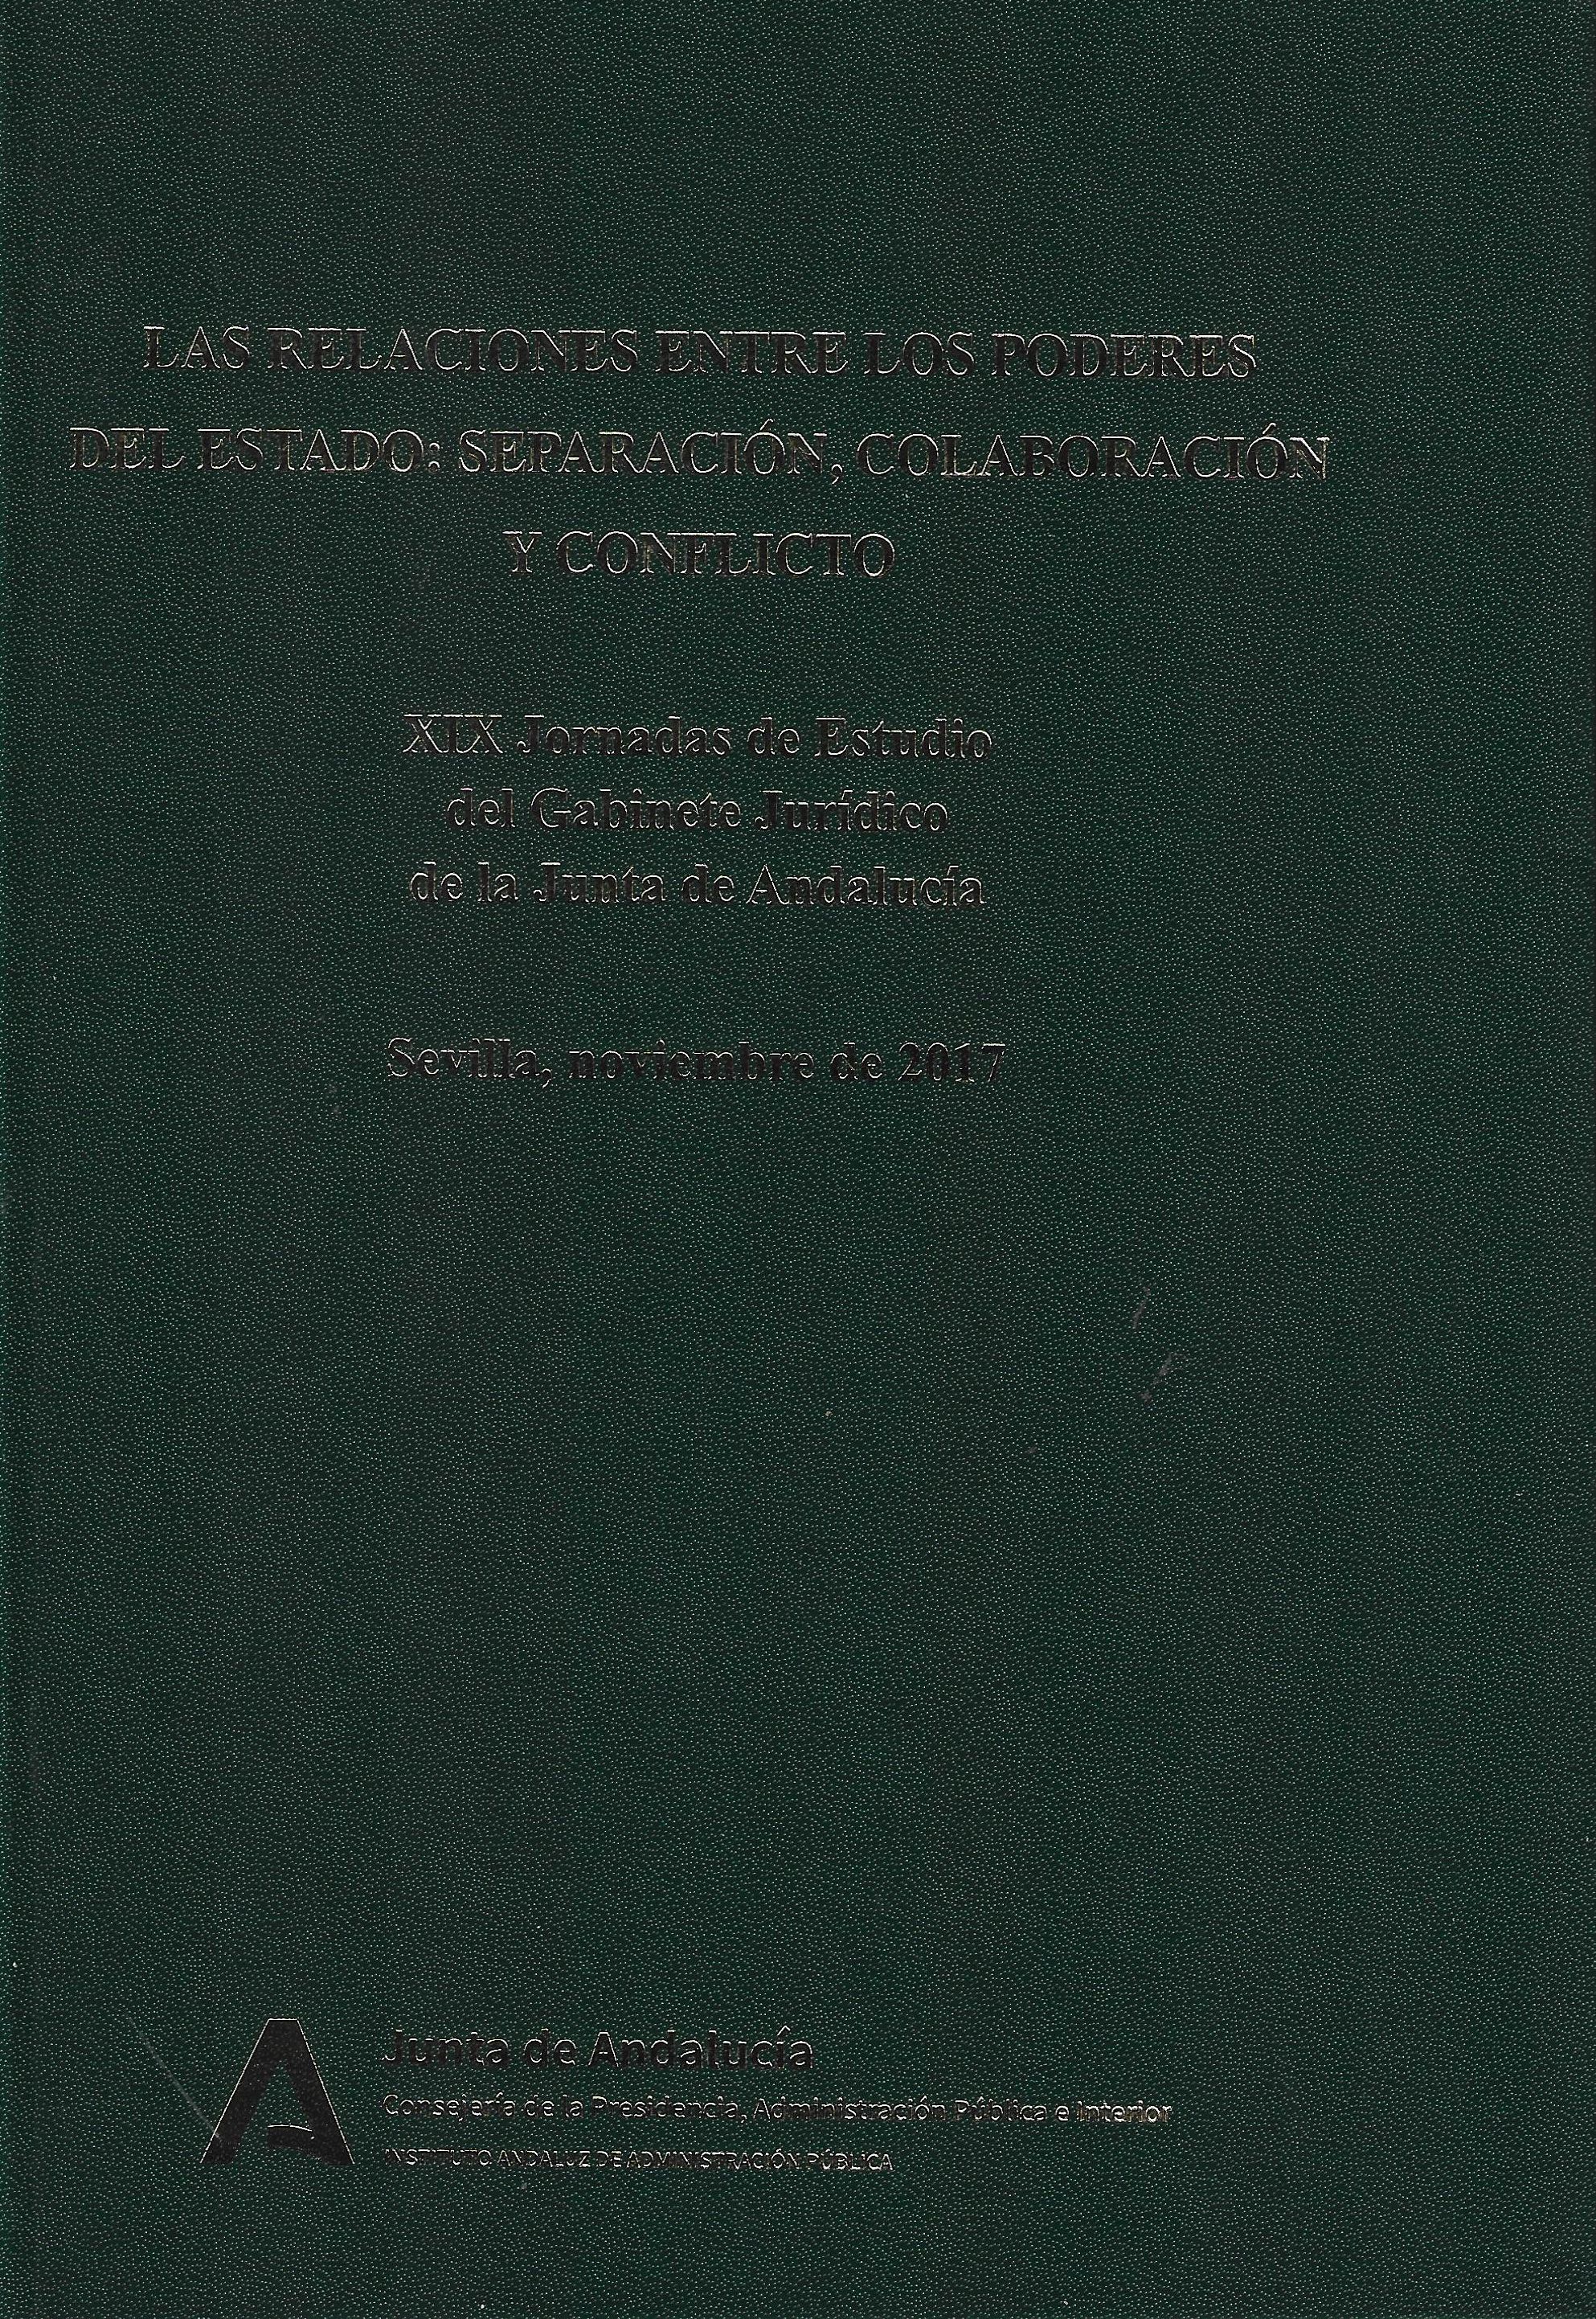 Imagen de portada del libro Las relaciones entre los poderes del Estado: separación, colaboración y conflicto